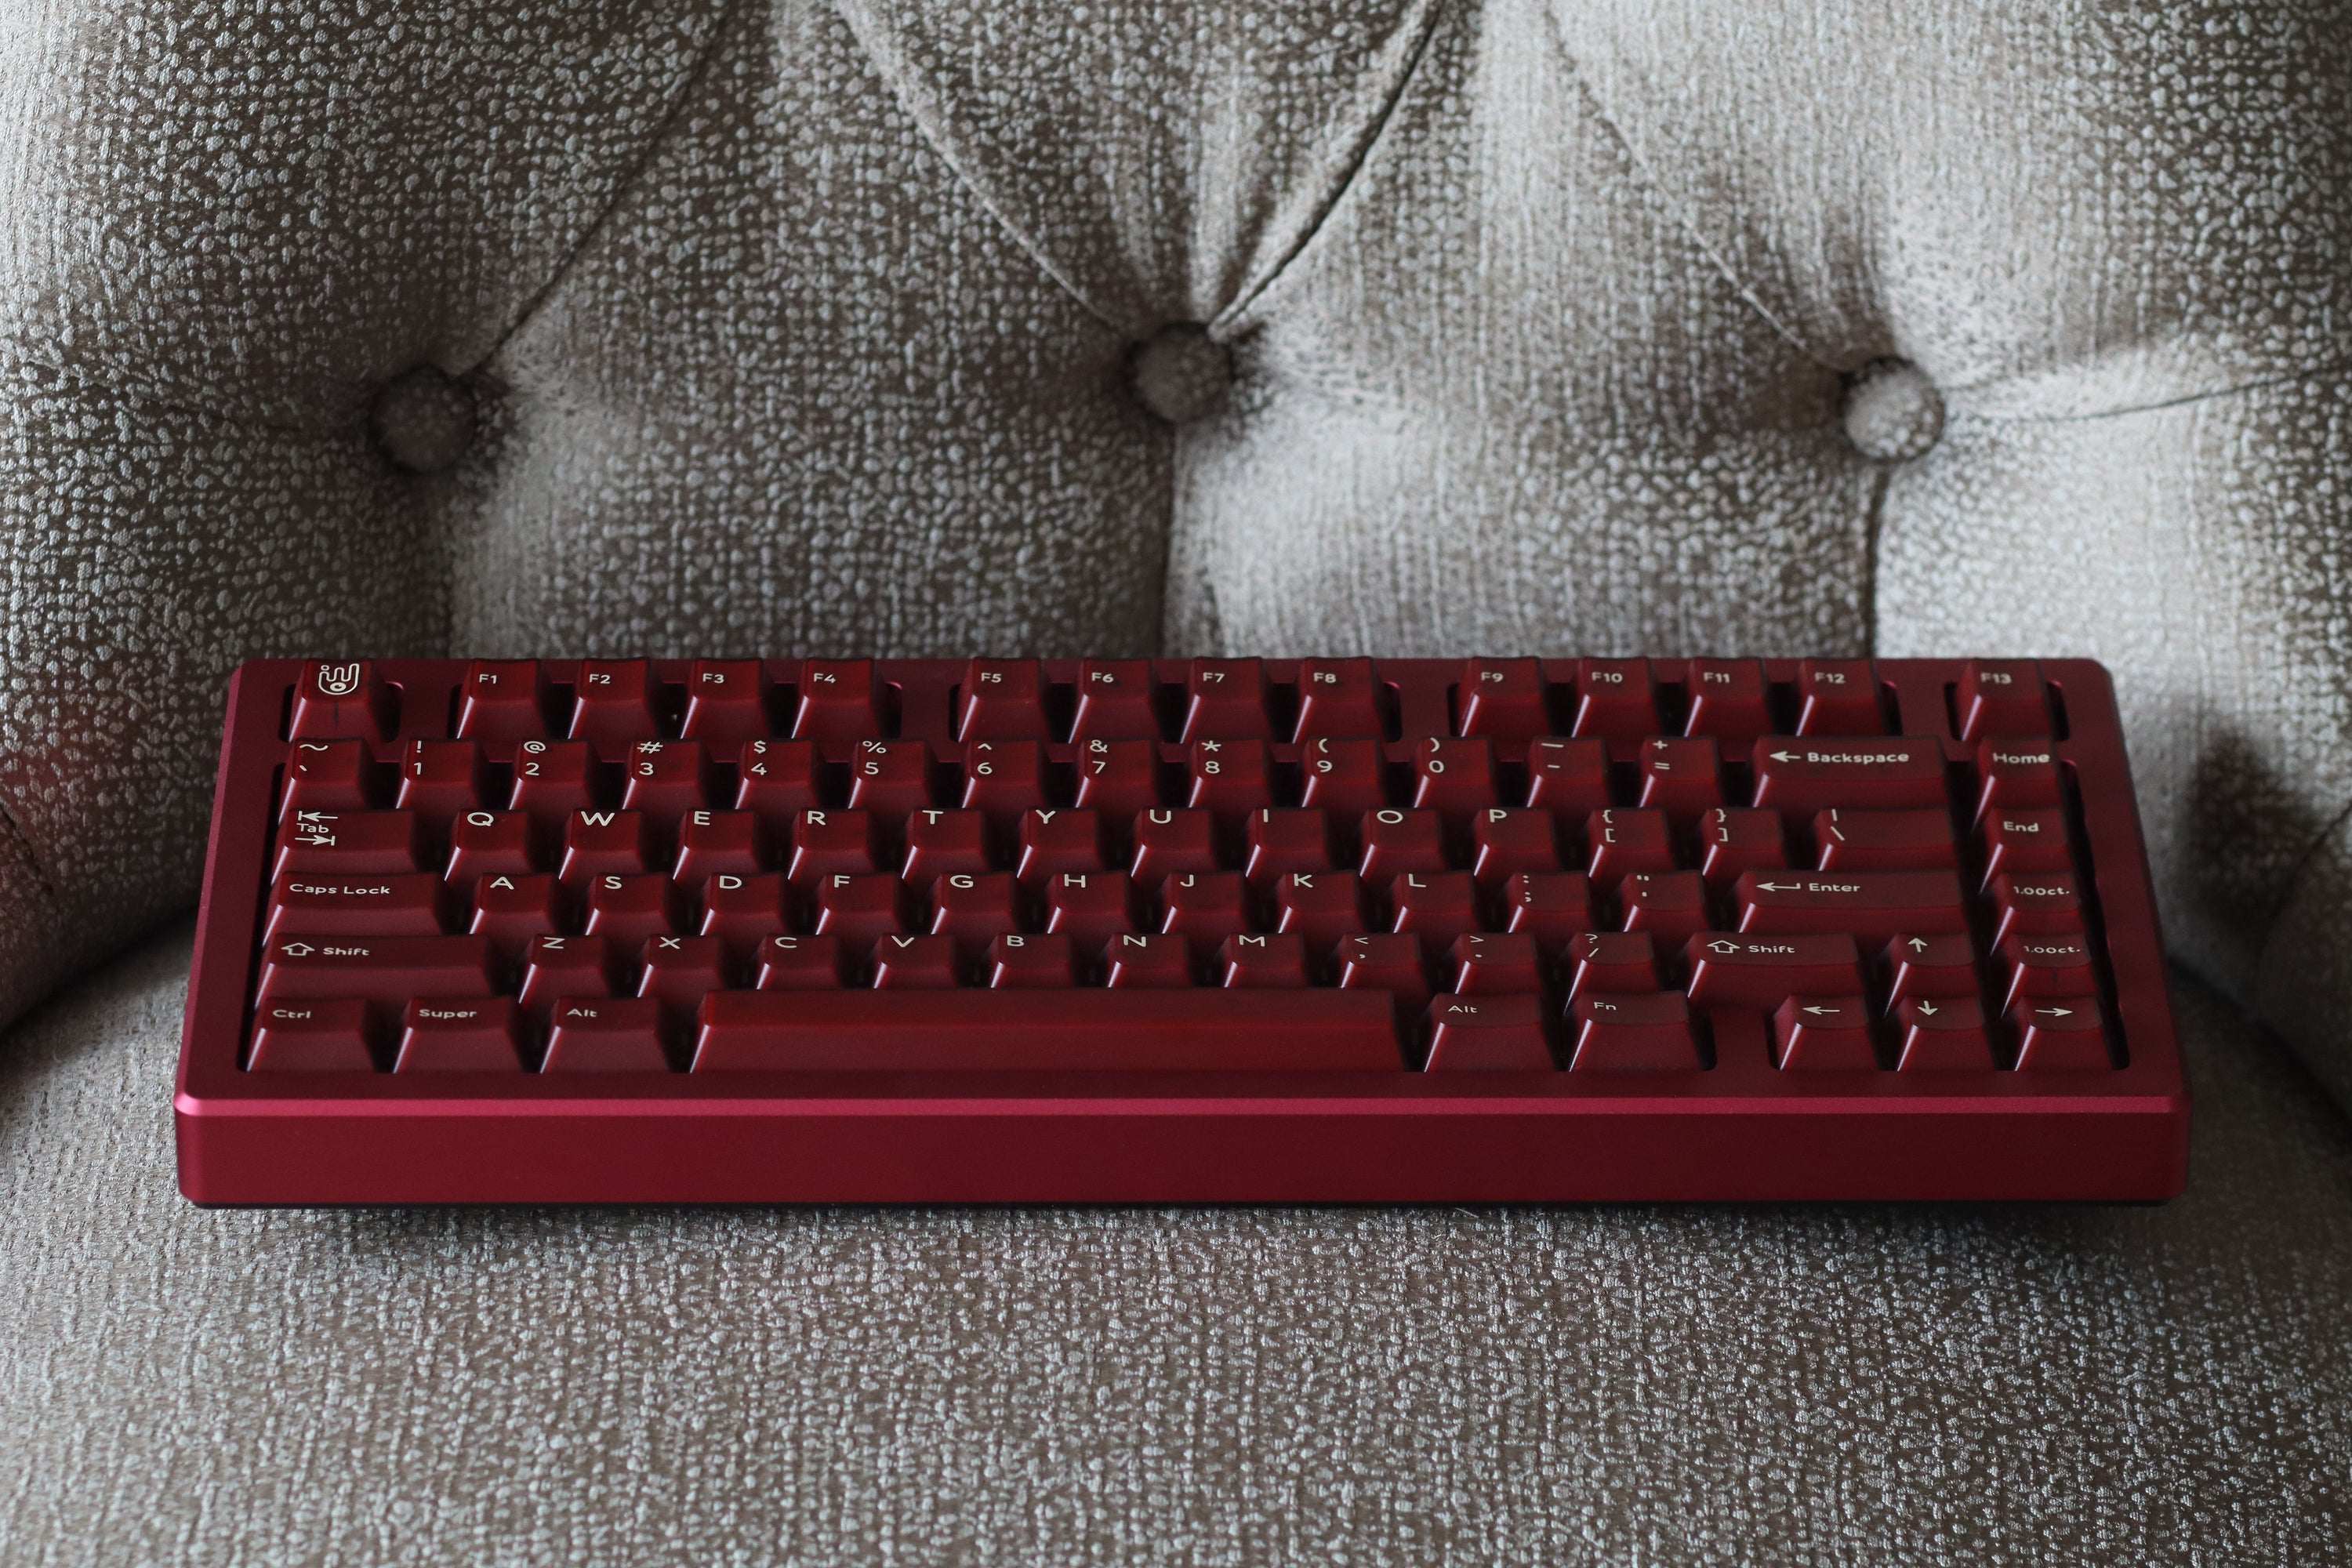 [Group-Buy] Jris75 PCB Gasket Mount Keyboard Kit - Wine Red&Black（PVD Weight）